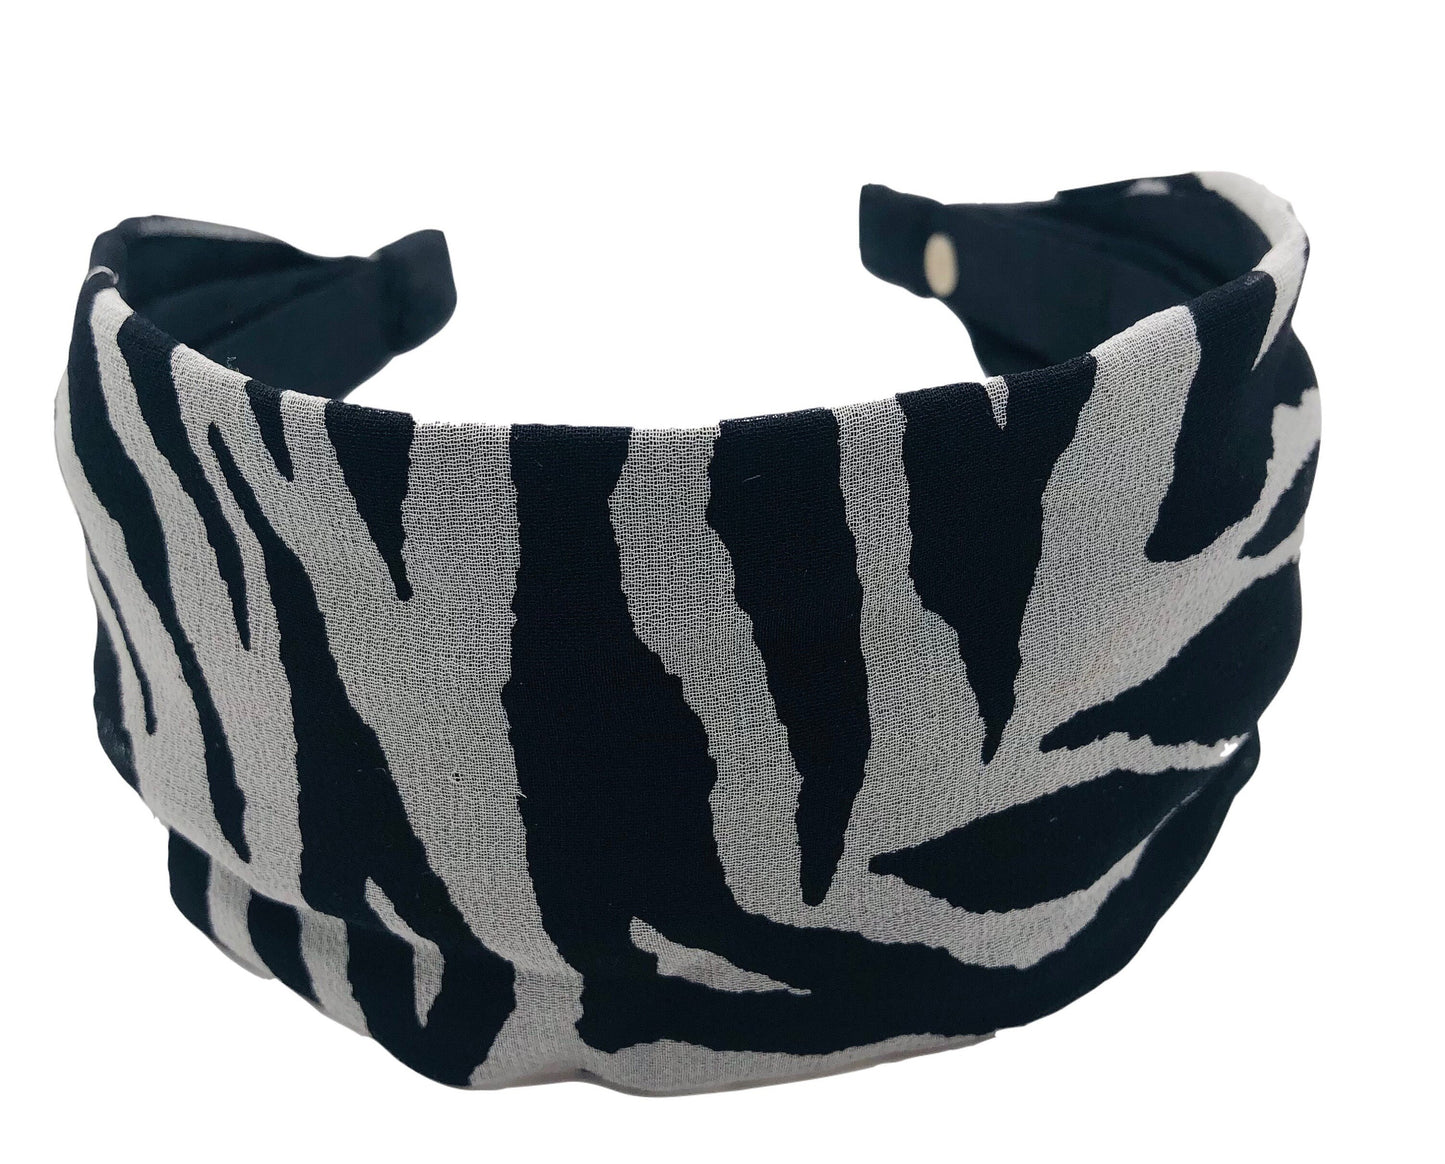 Karin's Garden 2.5-3" Zebra Silk Scarf Headband.  Handmade in the USA